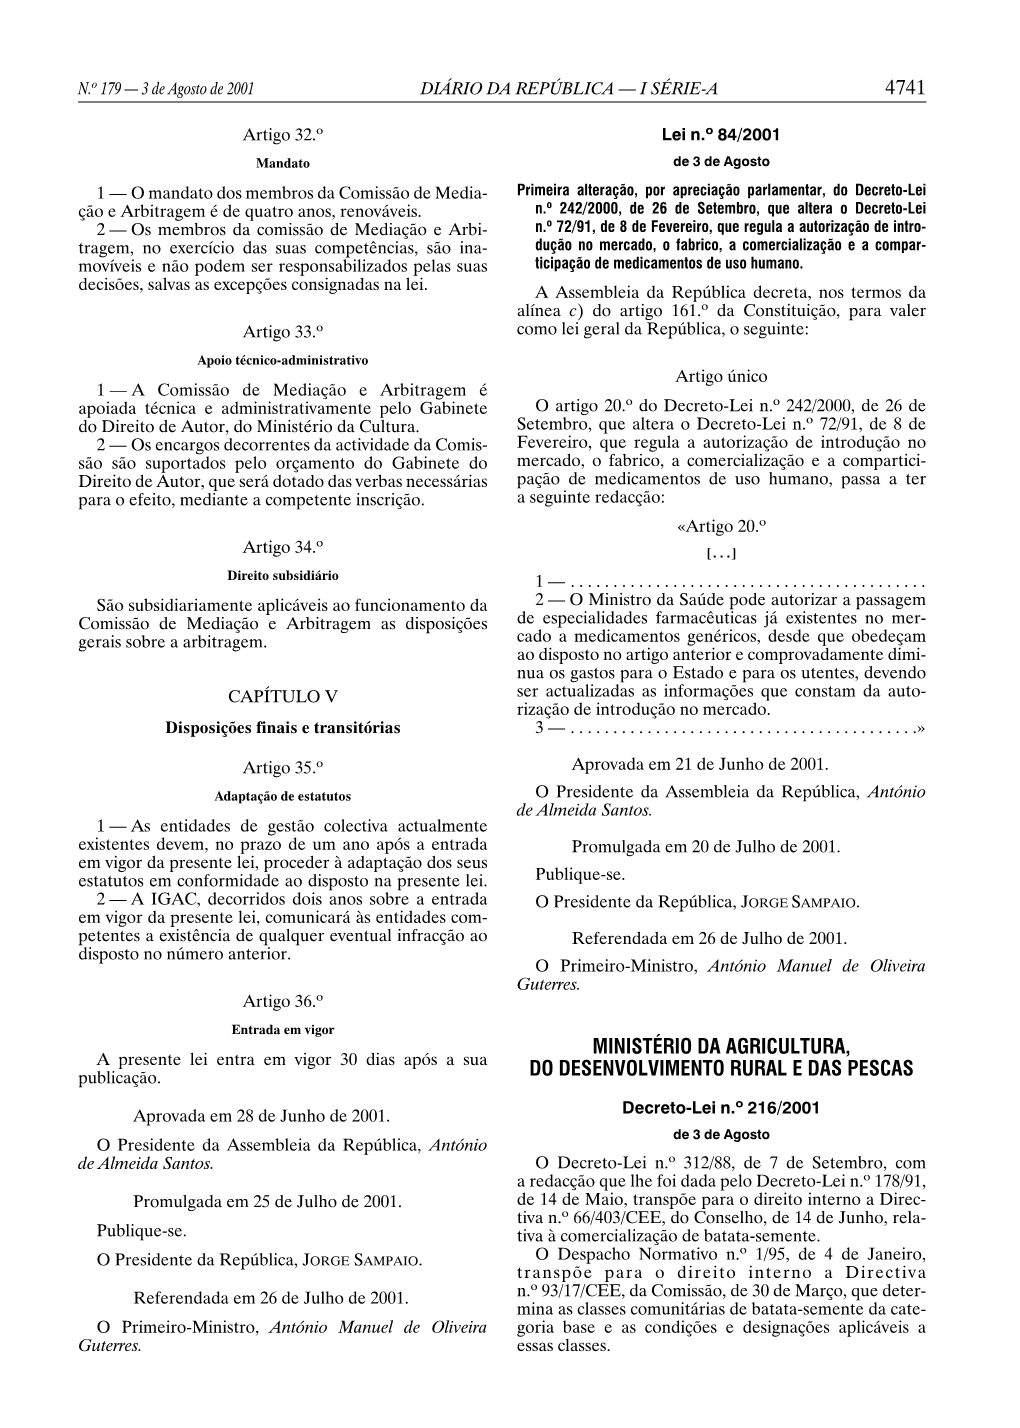 Decreto-Lei N.º 216/2001